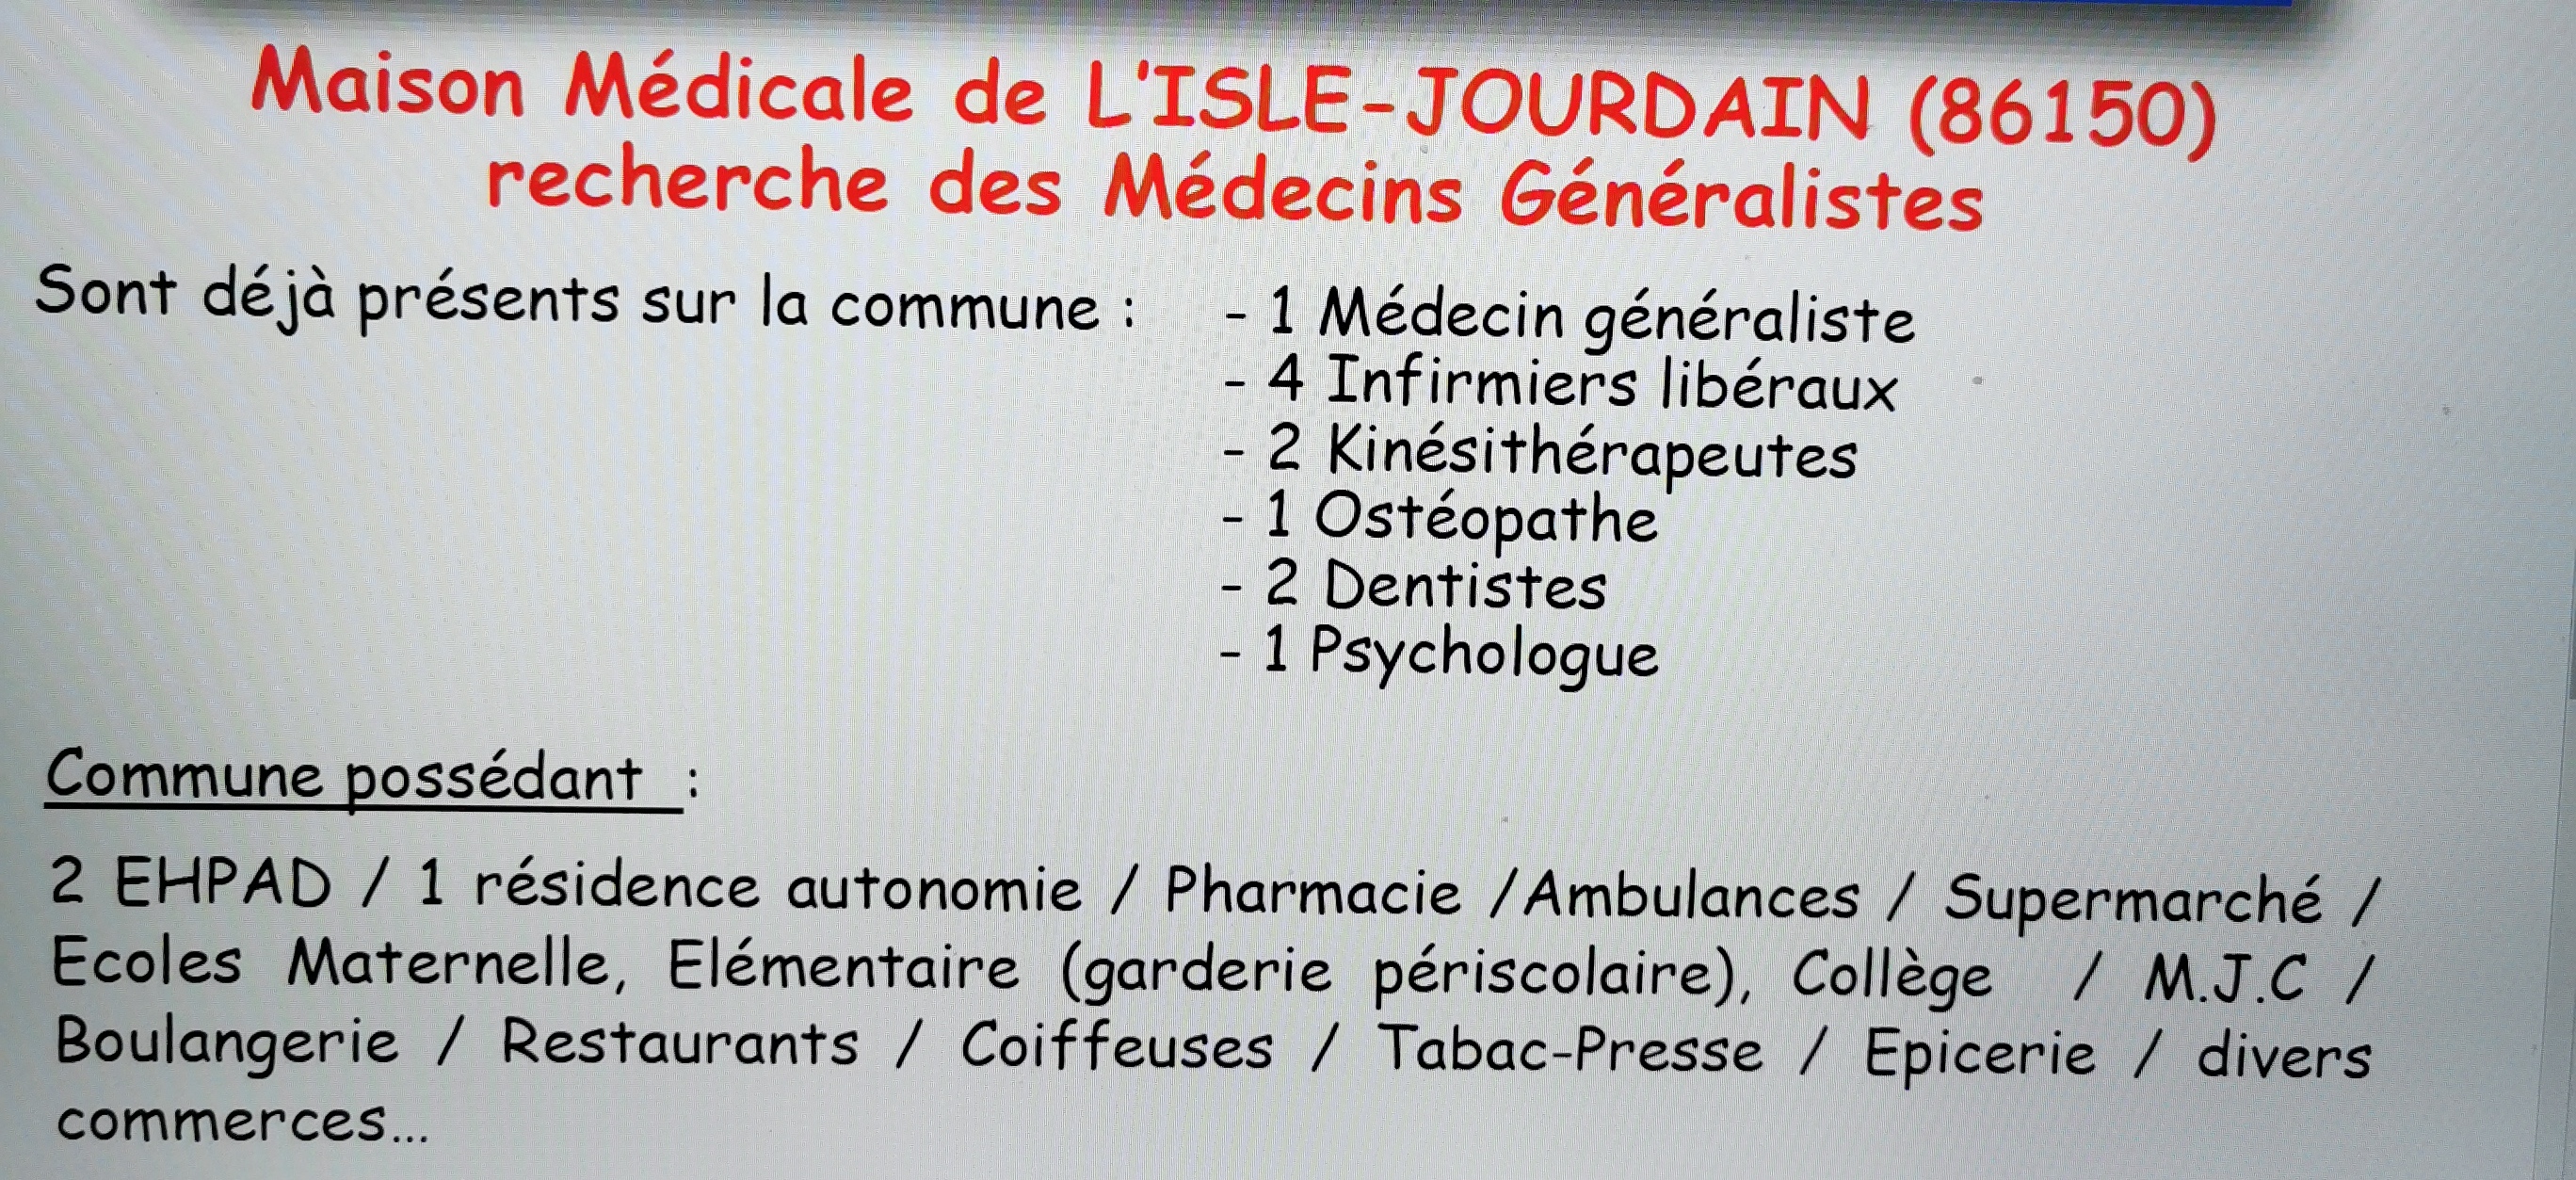 Recherchons médecins  généralistes sur la commune de L'Isle-Jourdain 86150. A temps plein ou à temps partiel.